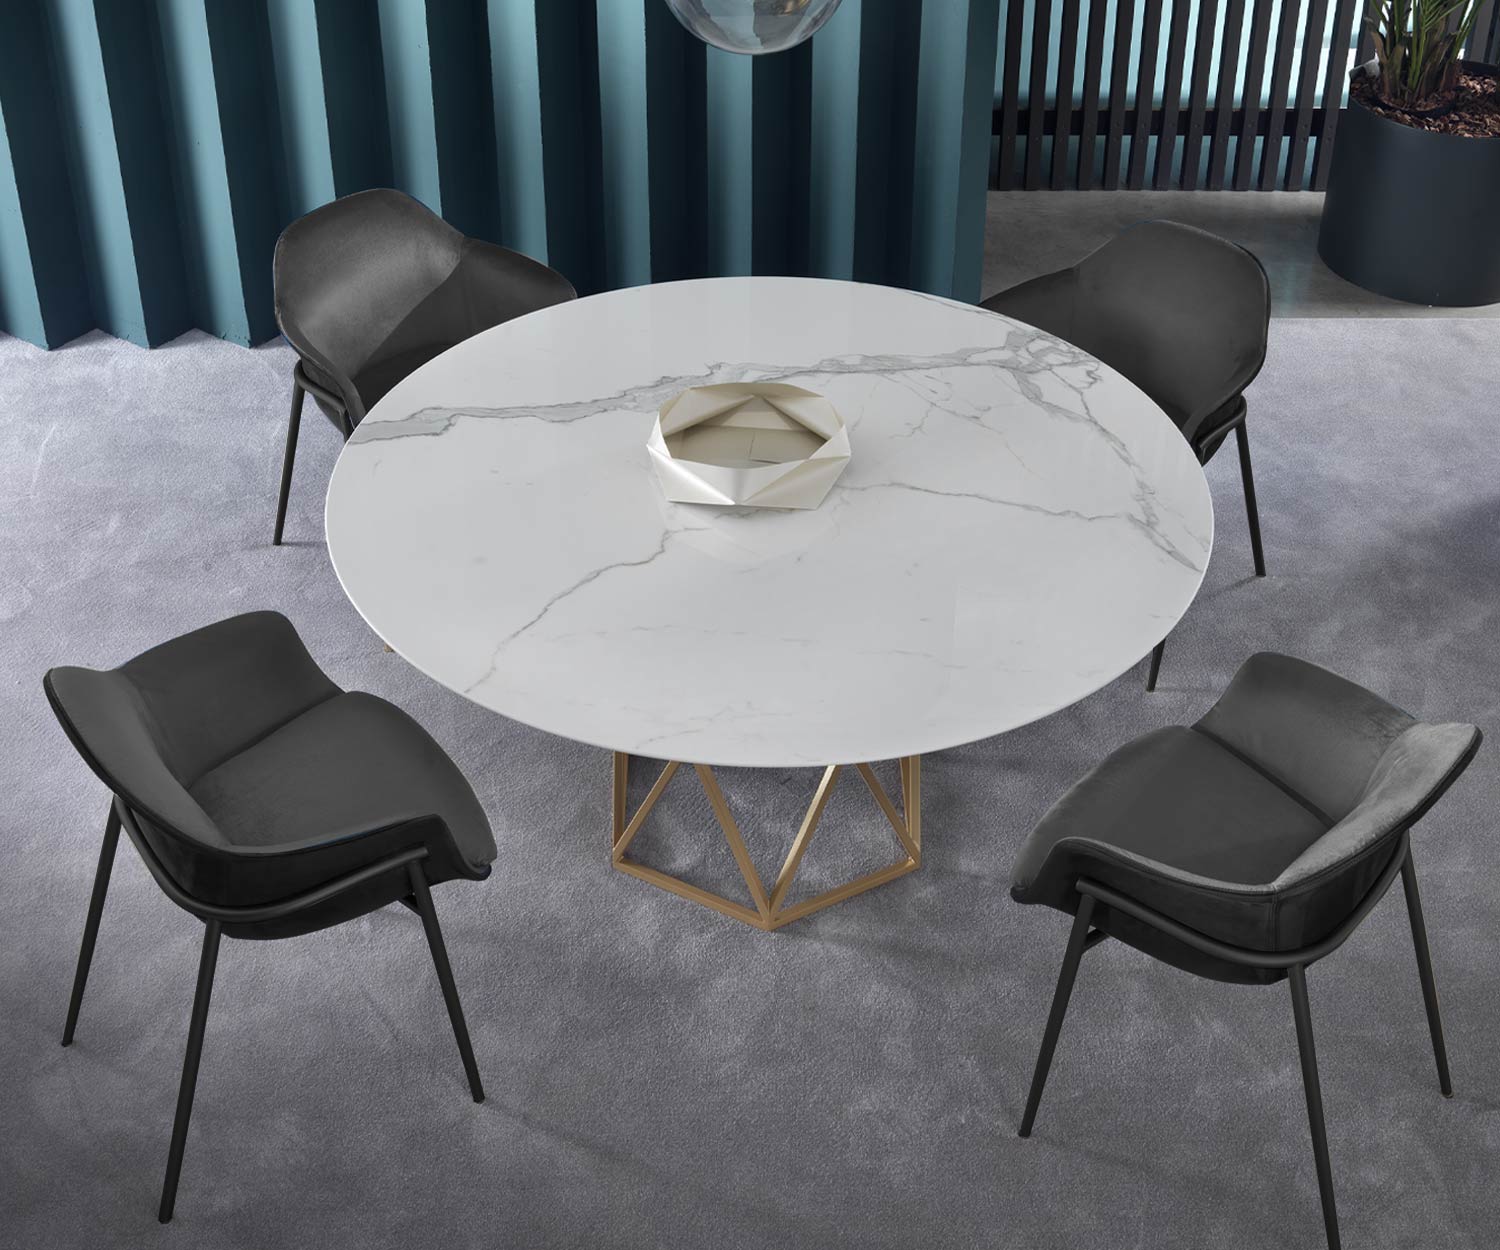 Accogliente poltrona nella sala da pranzo con tavolo in marmo disposto come un ensemble di 4 persone